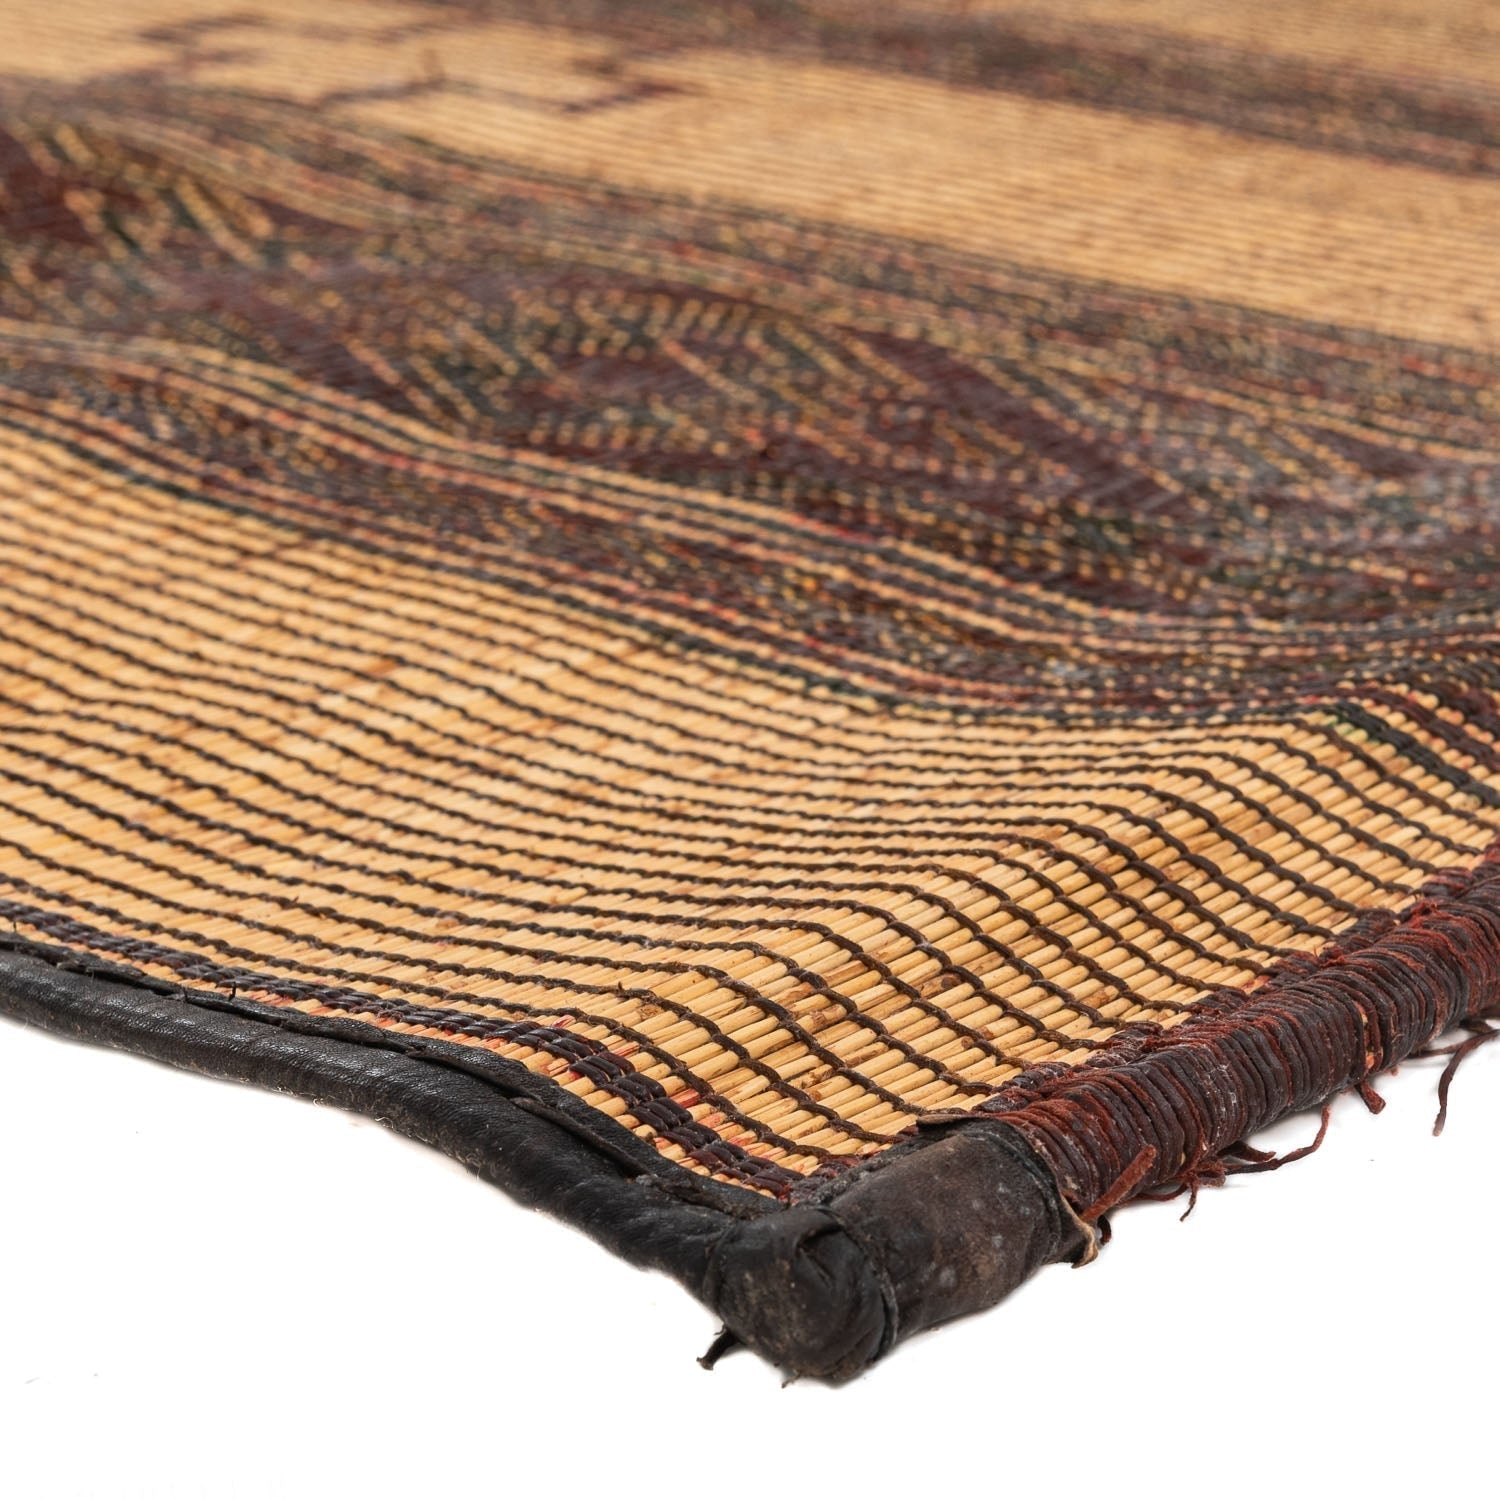 Ade - vintage tuareg rug - Benisouk